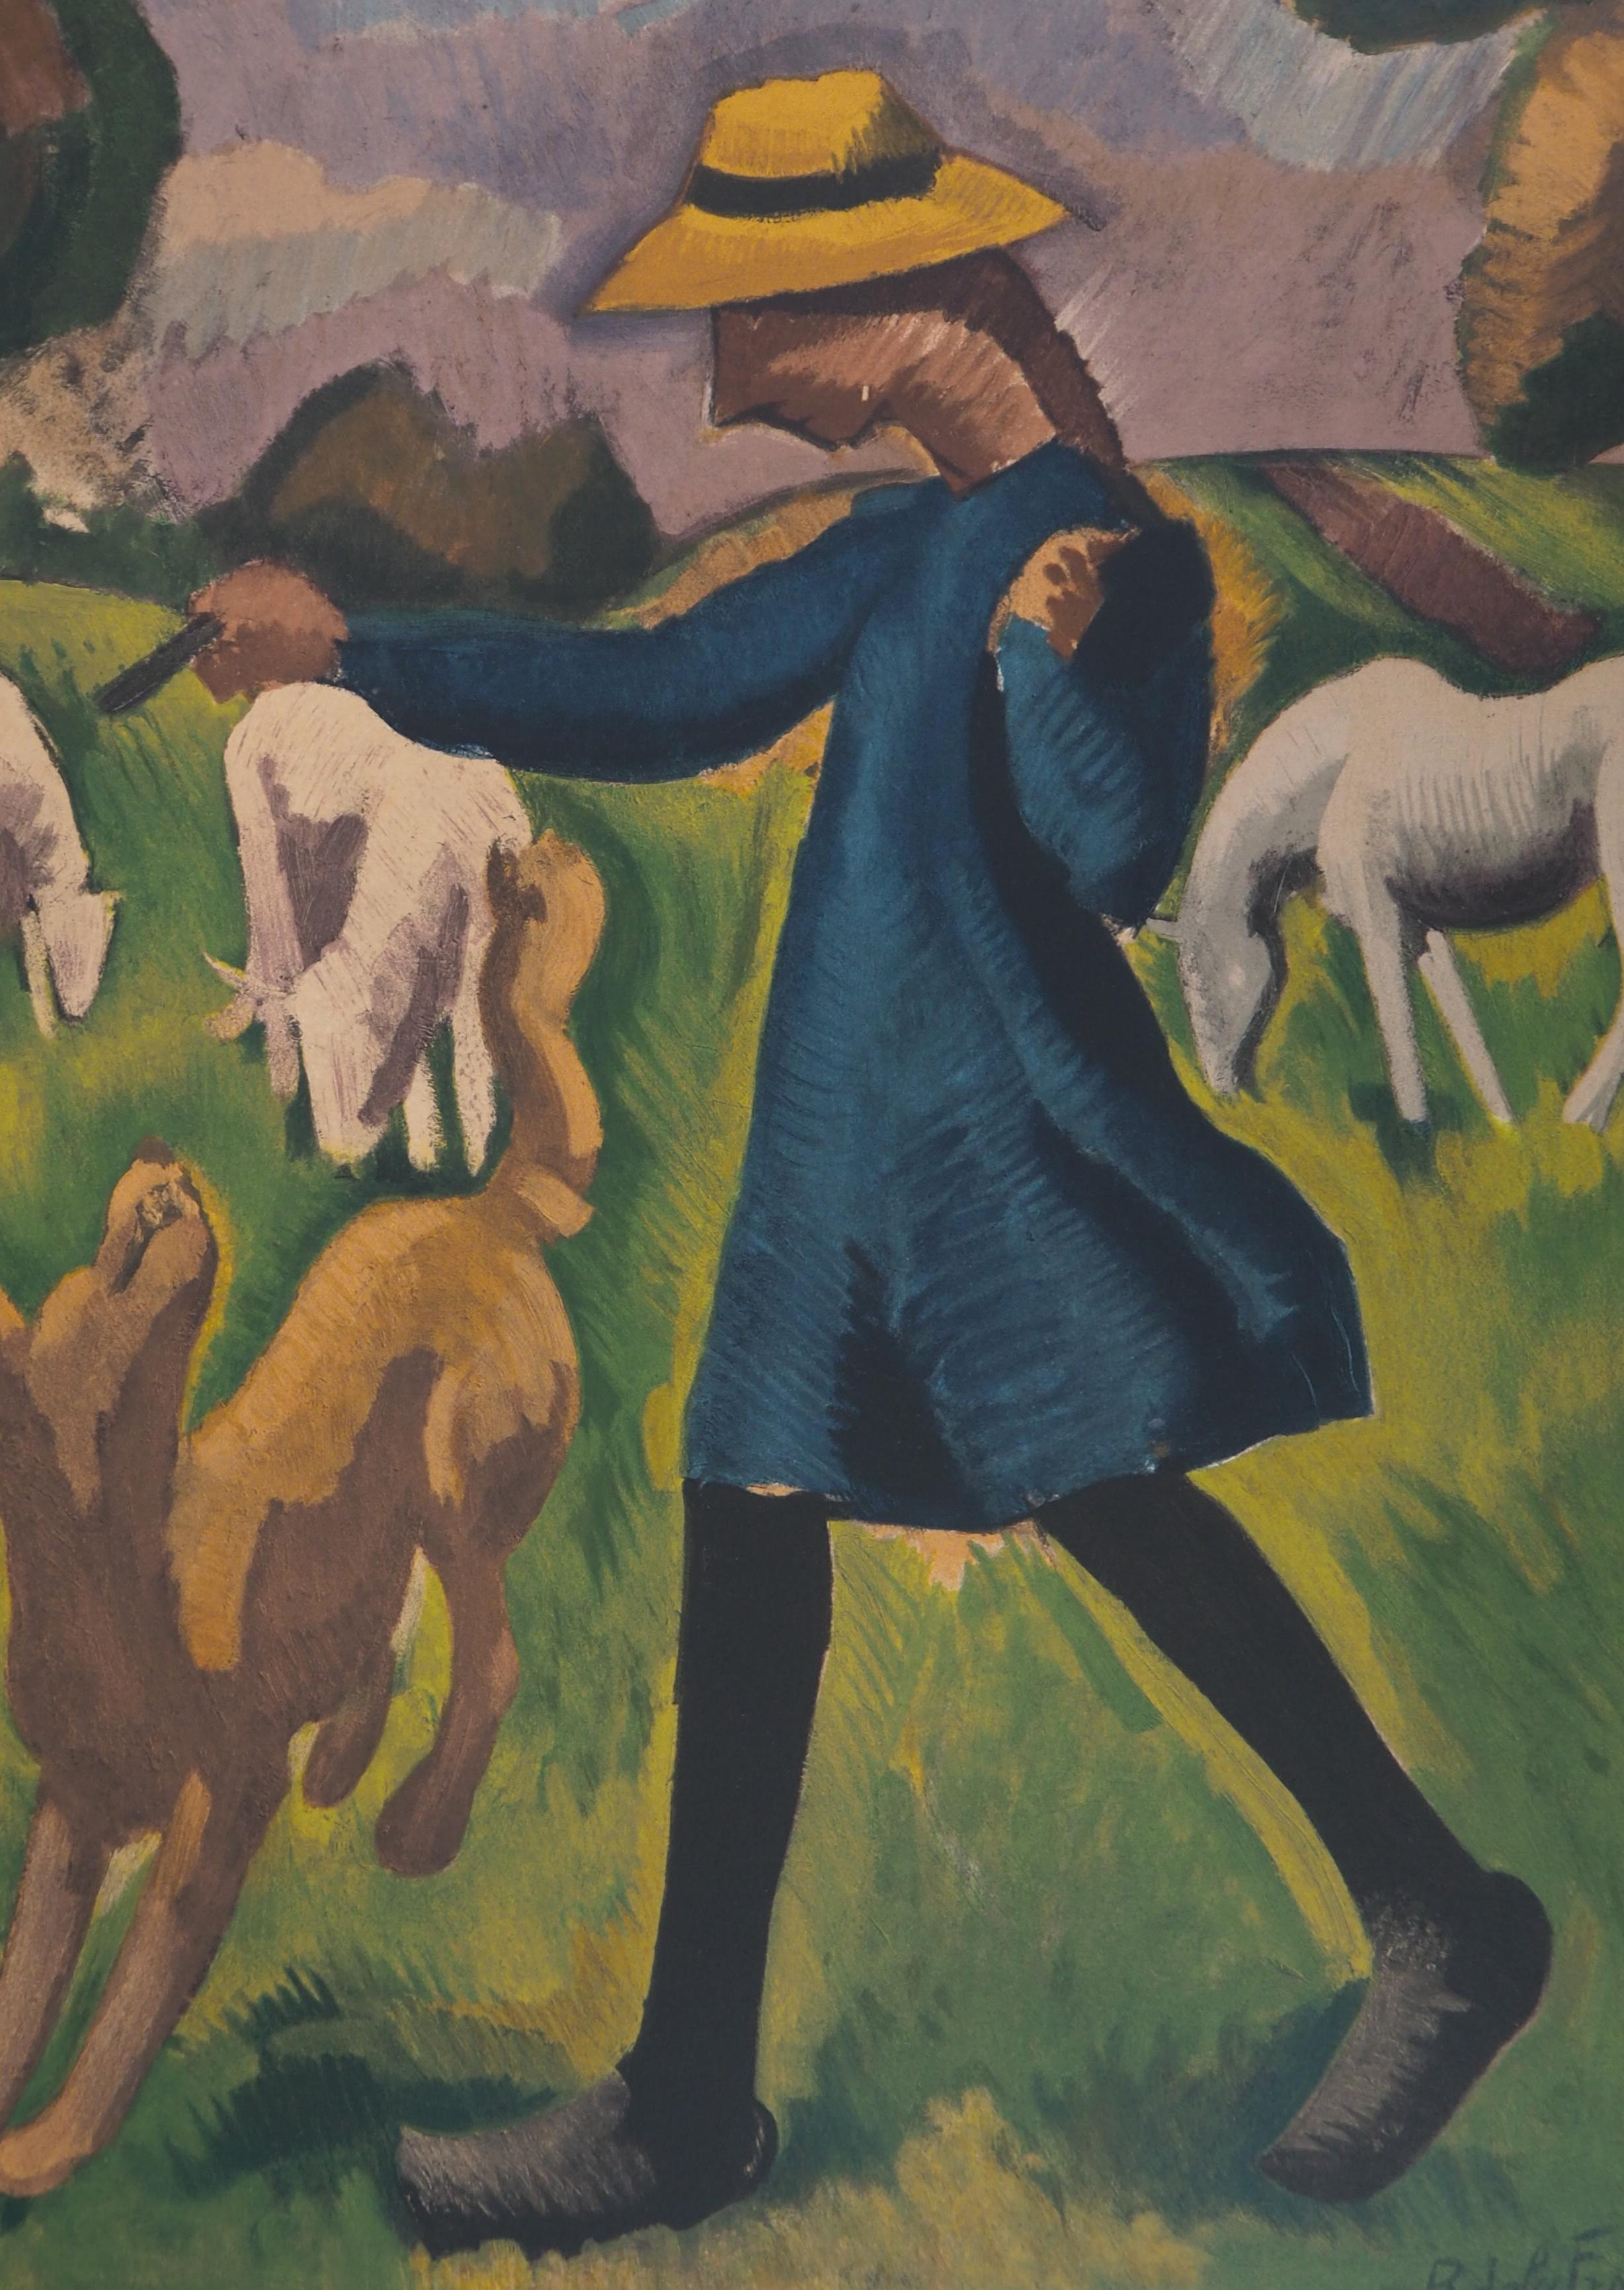 Roger de la Fresnaye (nach)
Landschaft: Mädchen spielt mit einem Hund 

Steinlithographie nach einem Gemälde
Gedruckt in der Werkstatt von Mourlot
Gedruckte Unterschrift auf der Platte
Auf Arches Pergament 65 x 50 cm (ca. 26 x 20